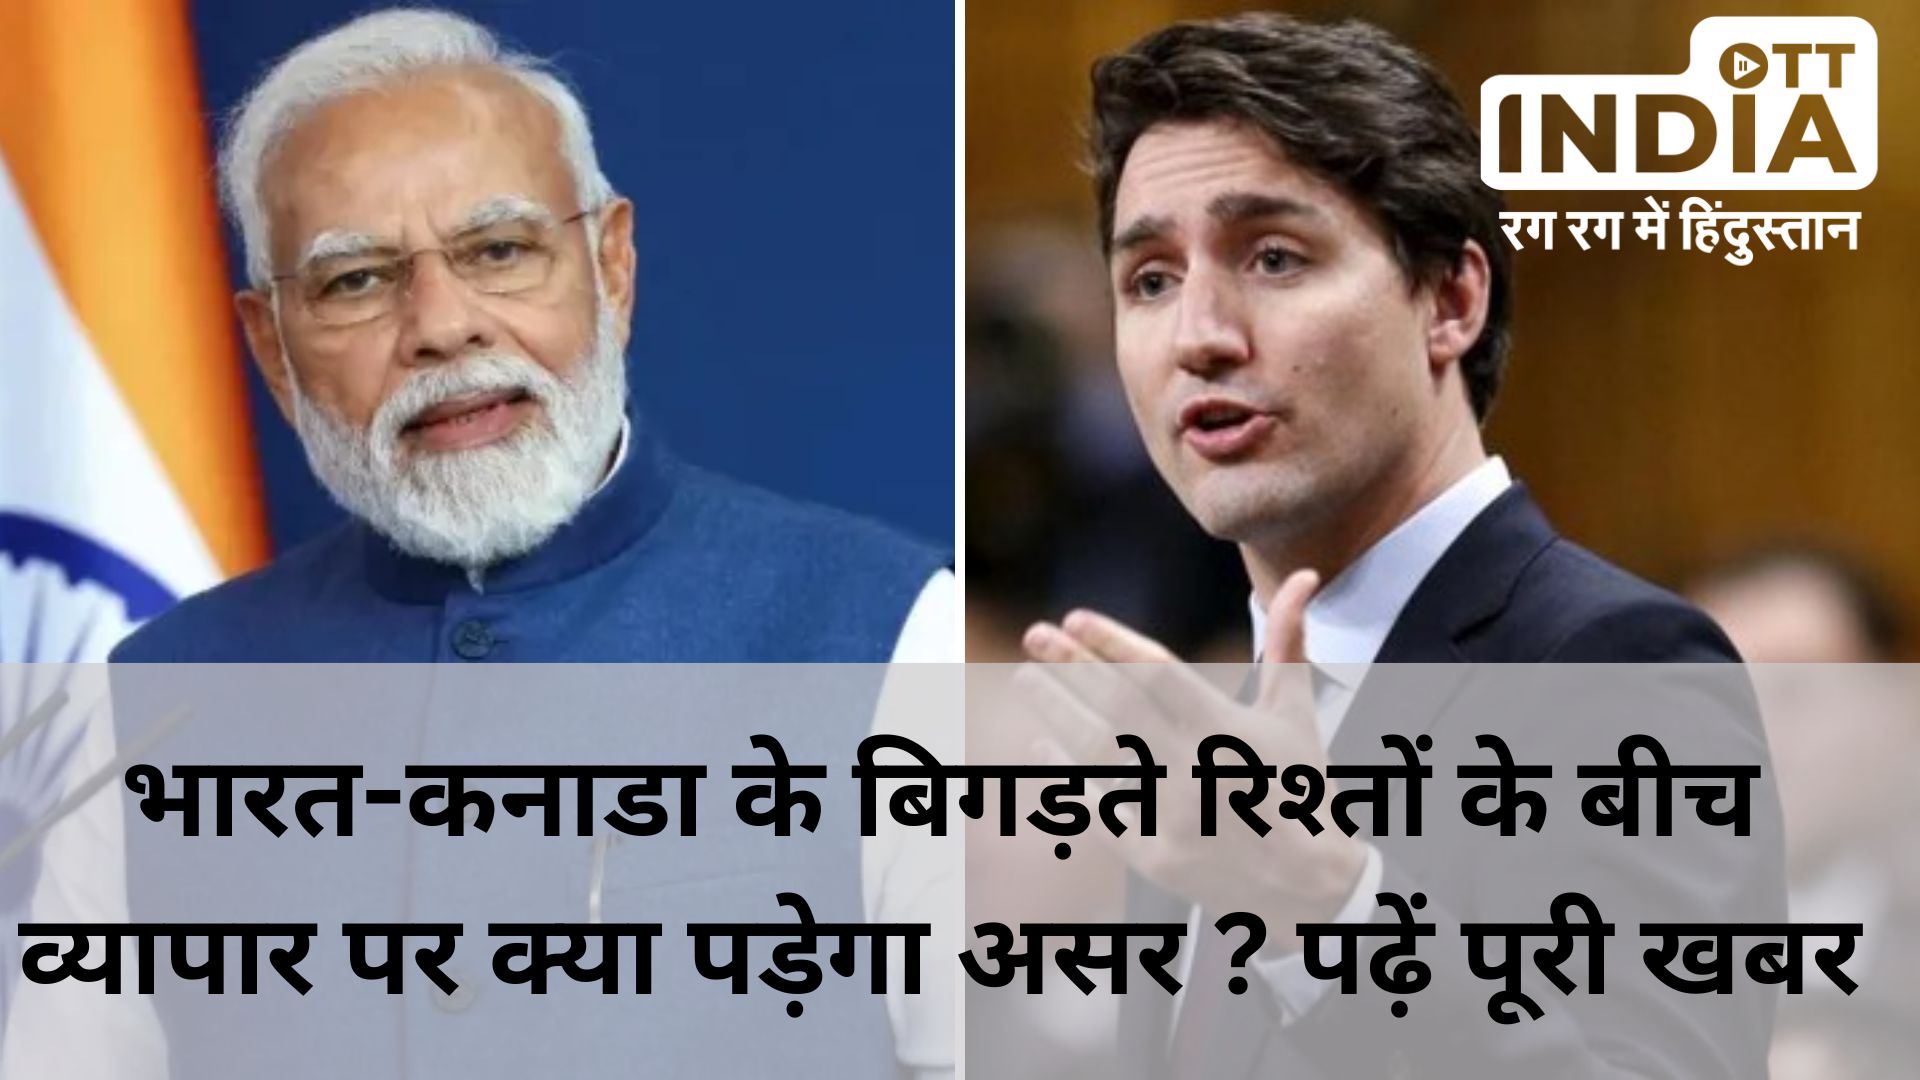 India Canada Dispute : कनाडा के साथ बिगड़ते रिश्तों के कारण क्या पड़ेगा व्यापार पर असर, जानें कौन किसपर कितना निर्भर…